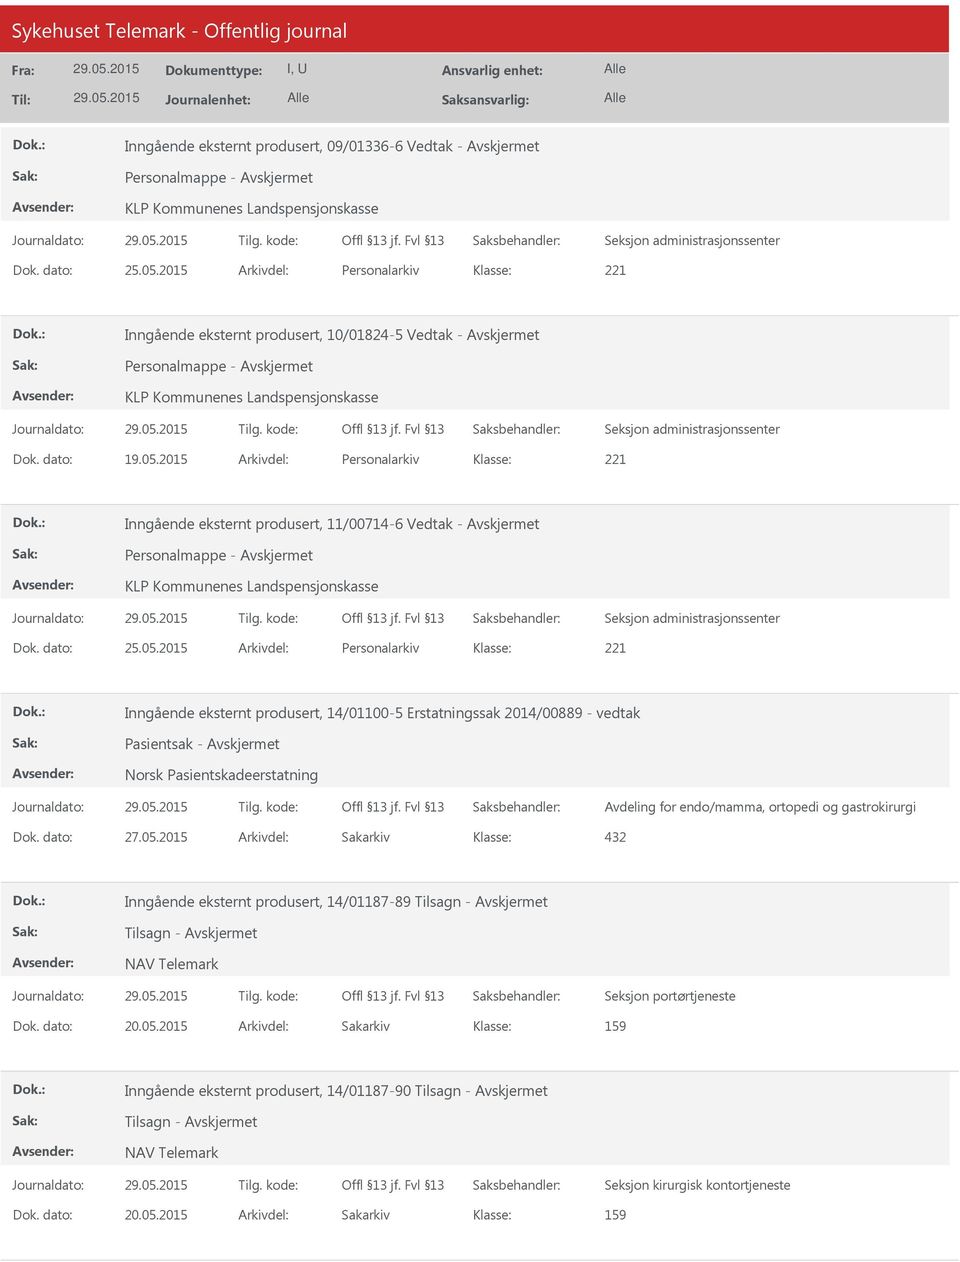 2015 Arkivdel: Personalarkiv 221 Inngående eksternt produsert, 11/00714-6 Vedtak - Personalmappe - KLP Kommunenes Landspensjonskasse Dok. dato: 25.05.